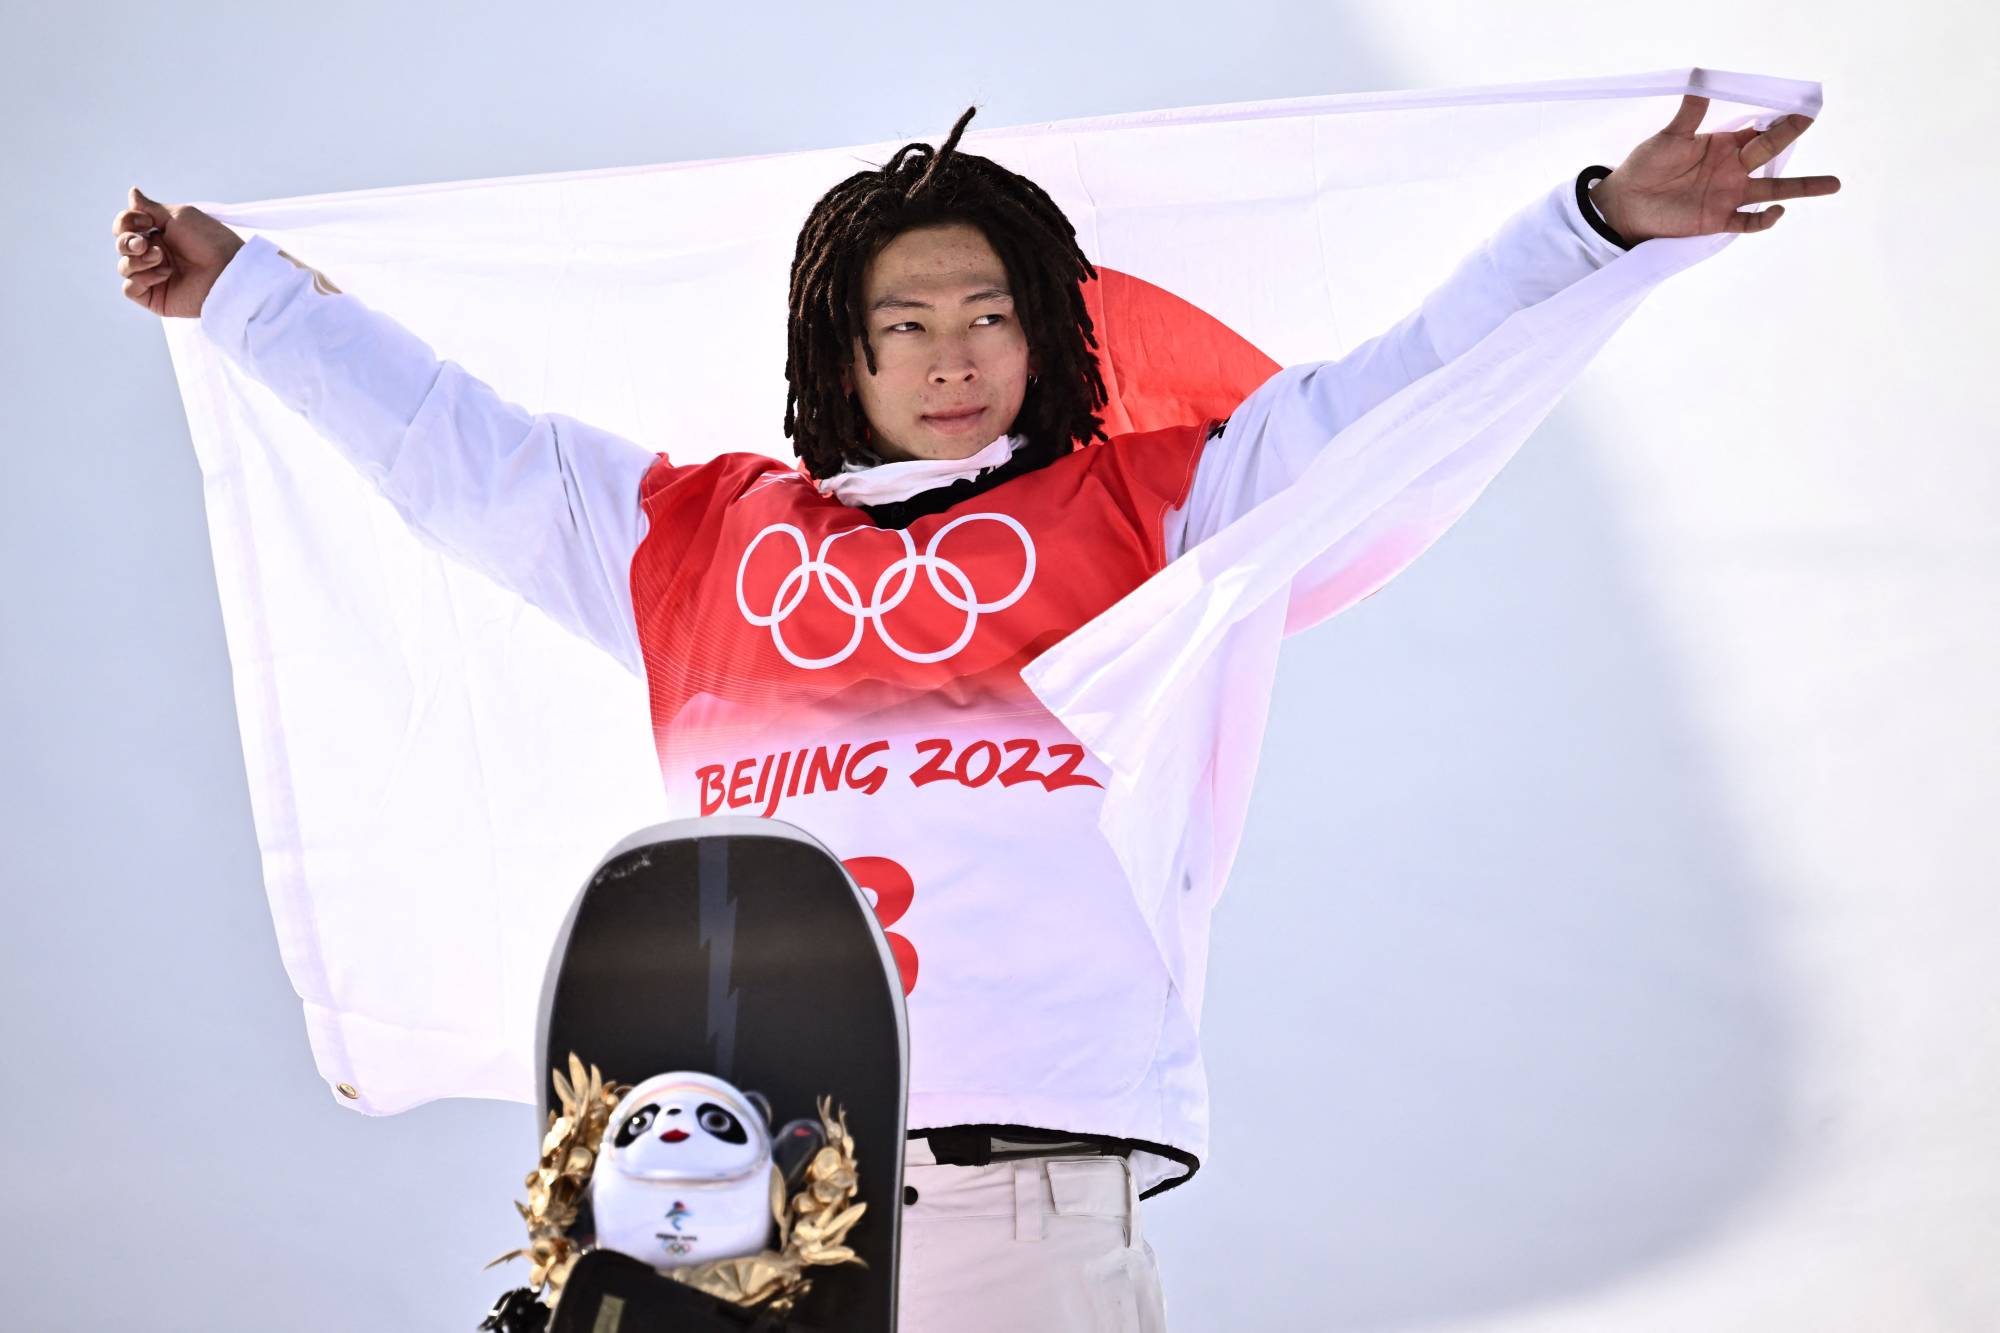 Ayumu Hirano là một trong những vận động viên trượt tuyết chuyên nghiệp hàng đầu của Nhật Bản. Với những màn trình diễn đẳng cấp và lịch sử phong phú, môn trượt tuyết halfpipe của Nhật Bản đã được đánh giá cao. Hãy cùng đến với hình ảnh của Ayumu Hirano và tìm hiểu thêm về lịch sử của môn thể thao này.